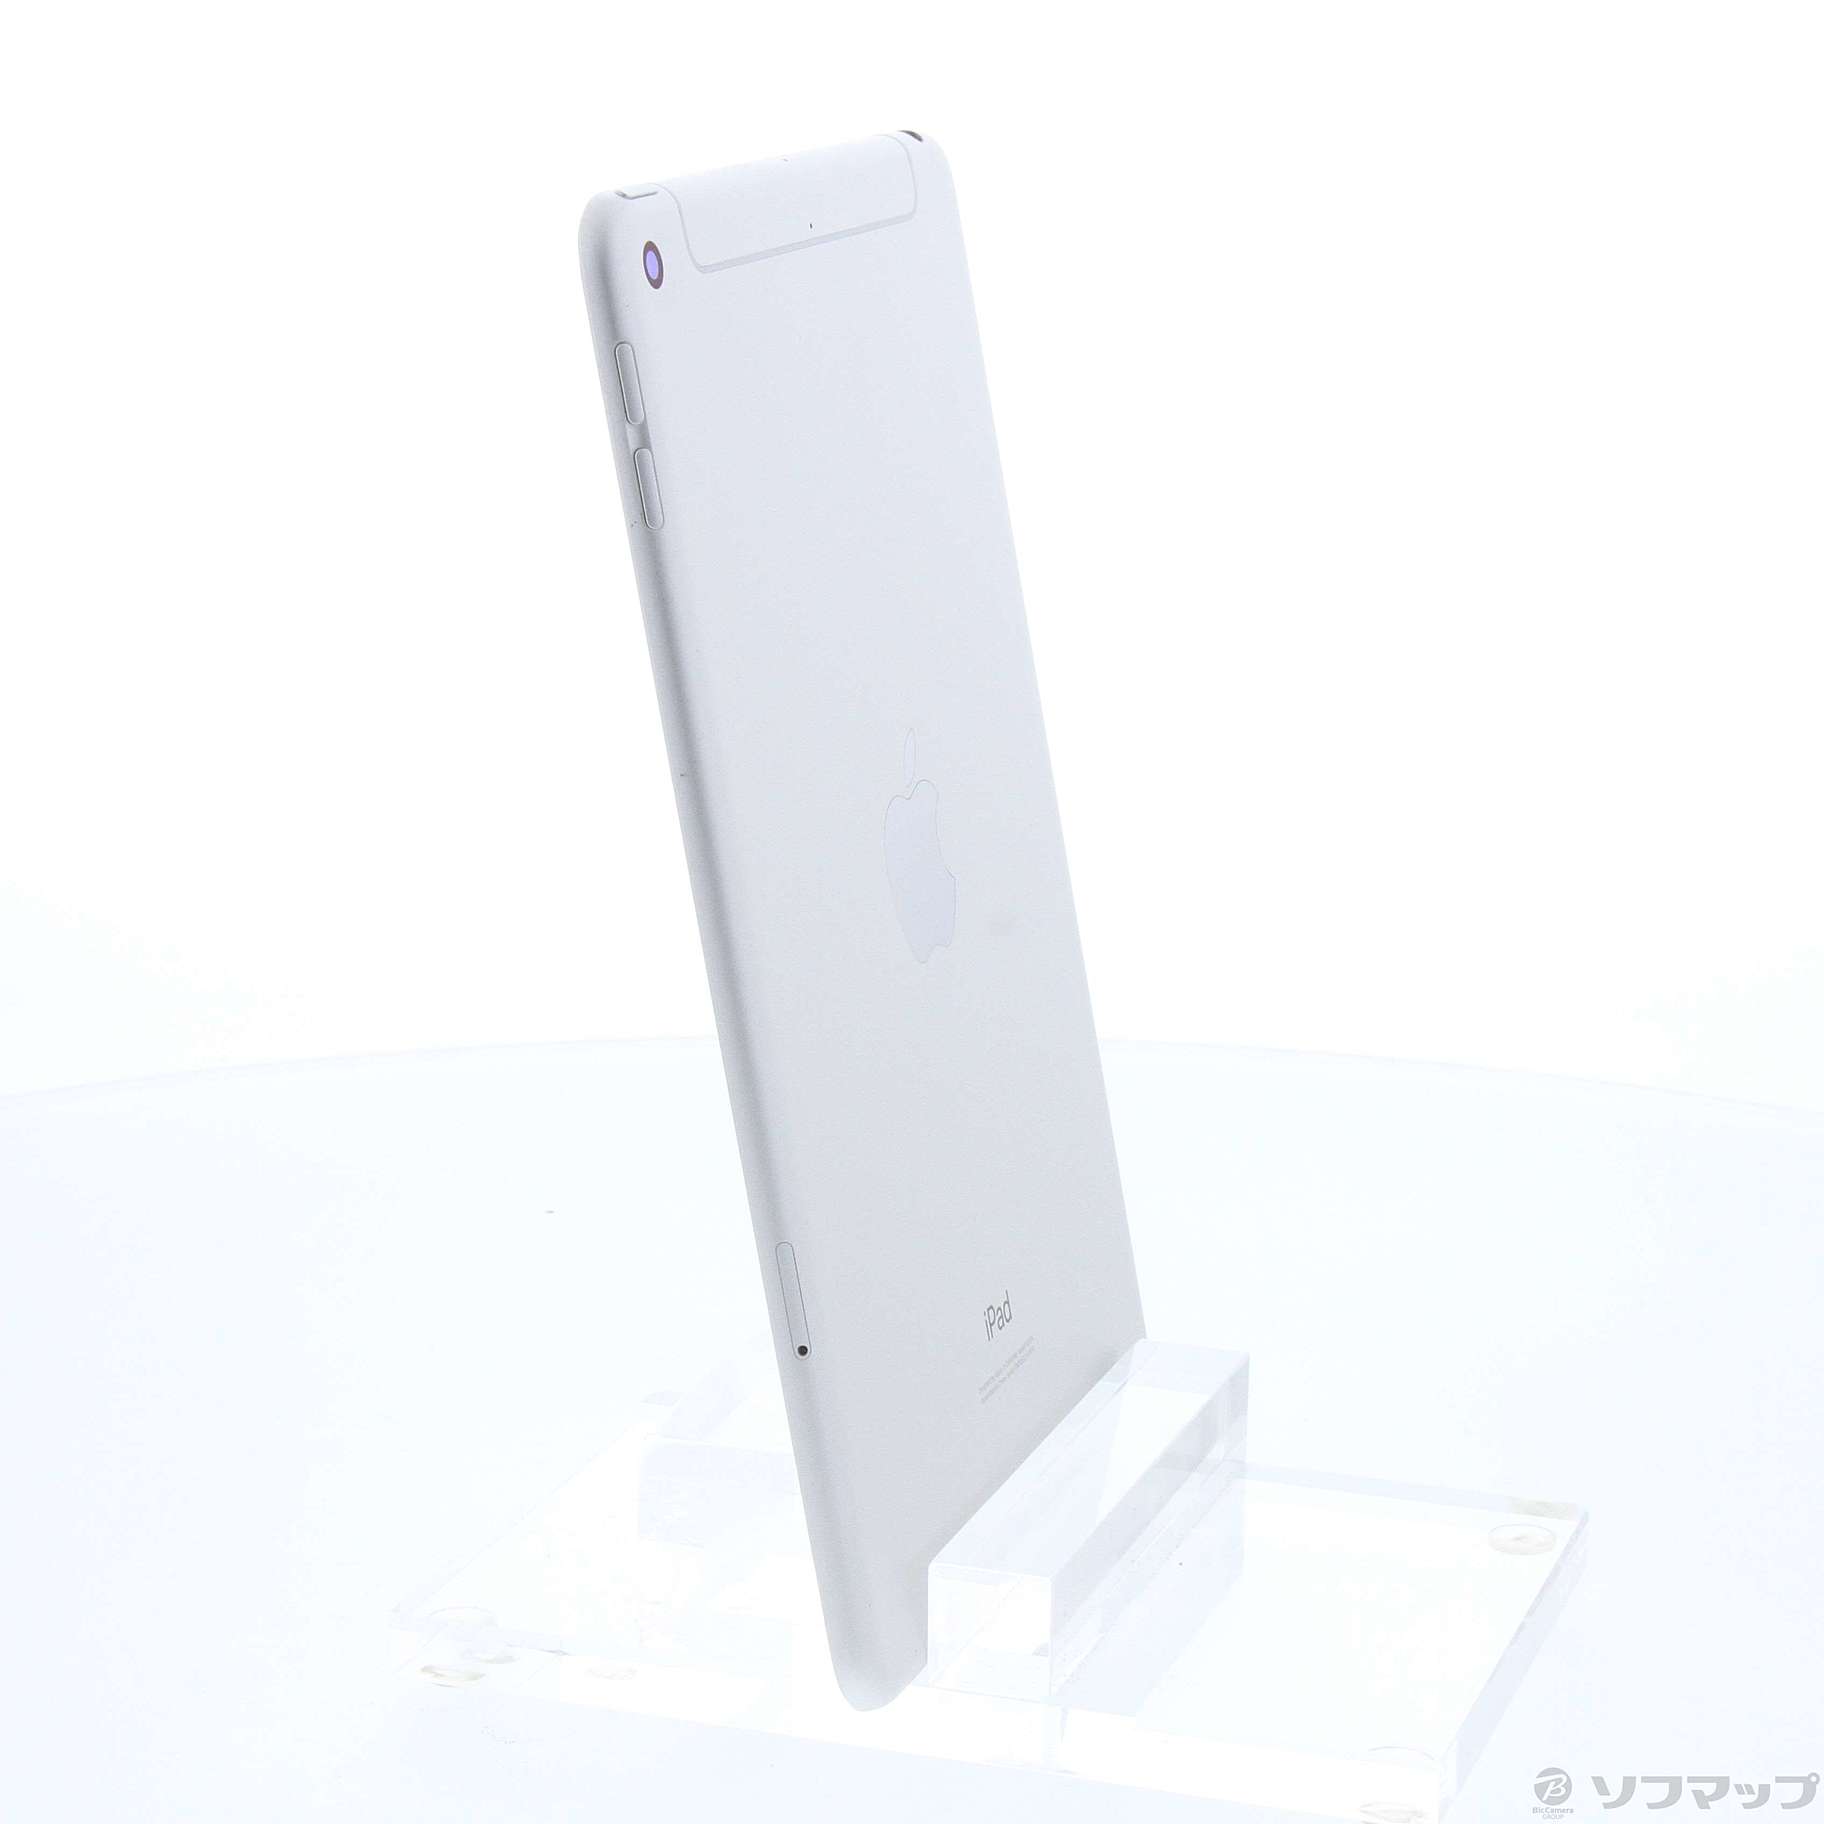 15,049円【良好】iPad mini 第5世代 64GB バッテリー残97%